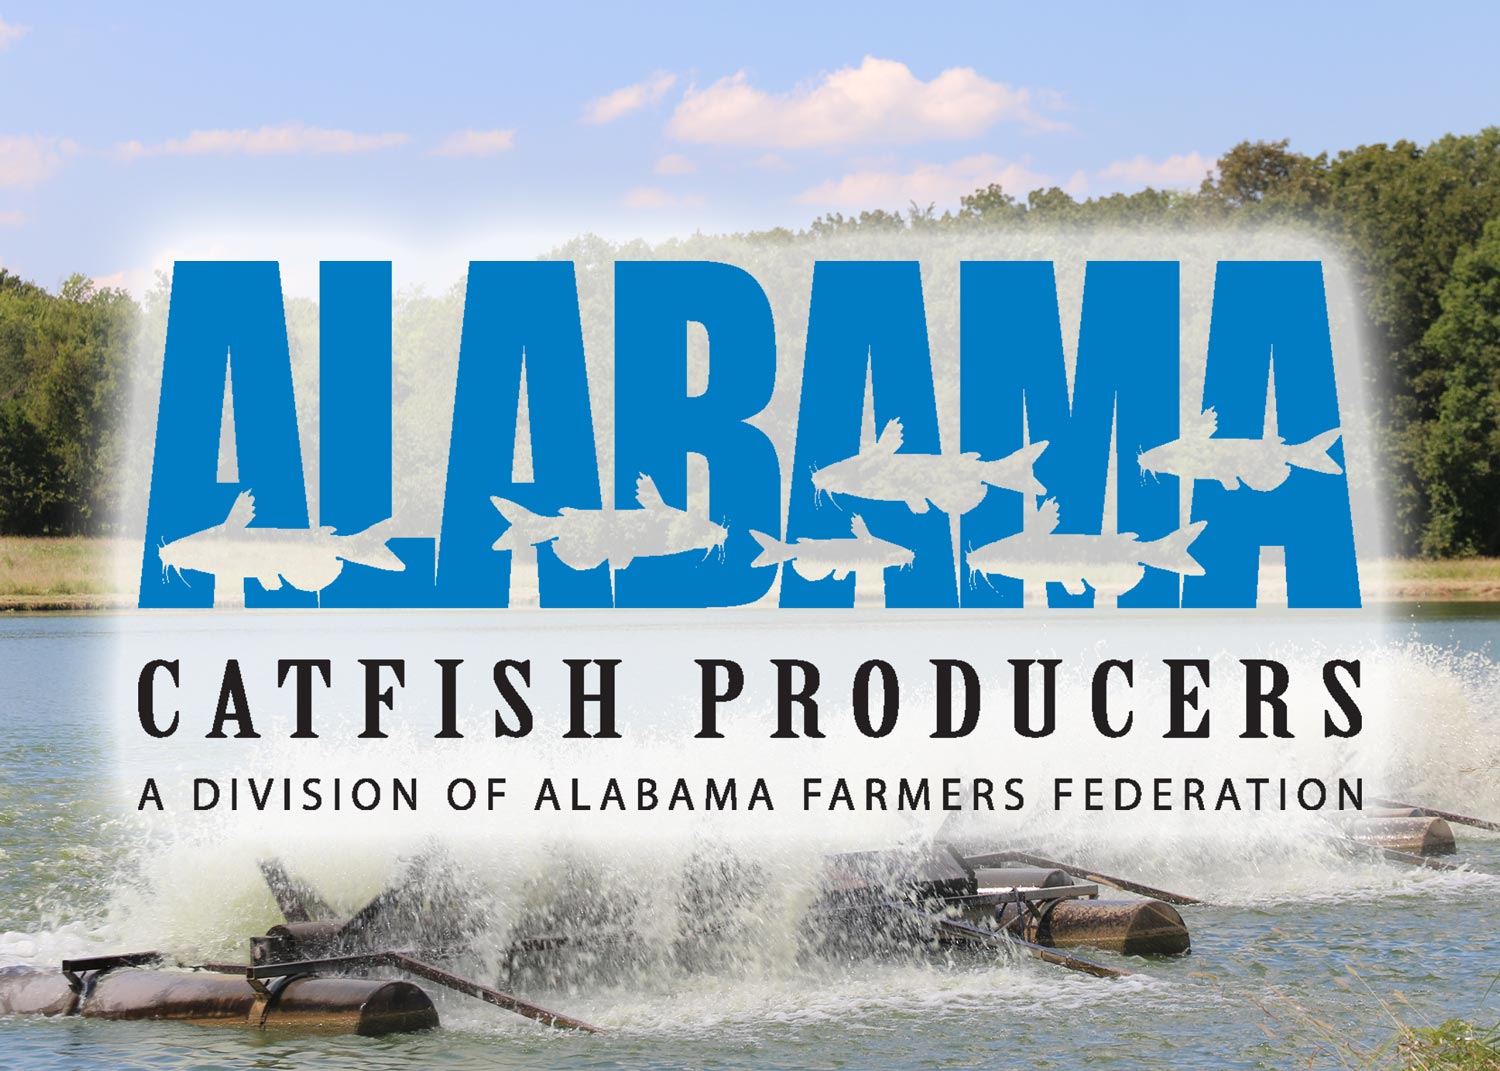 Alabama Catfish Producers